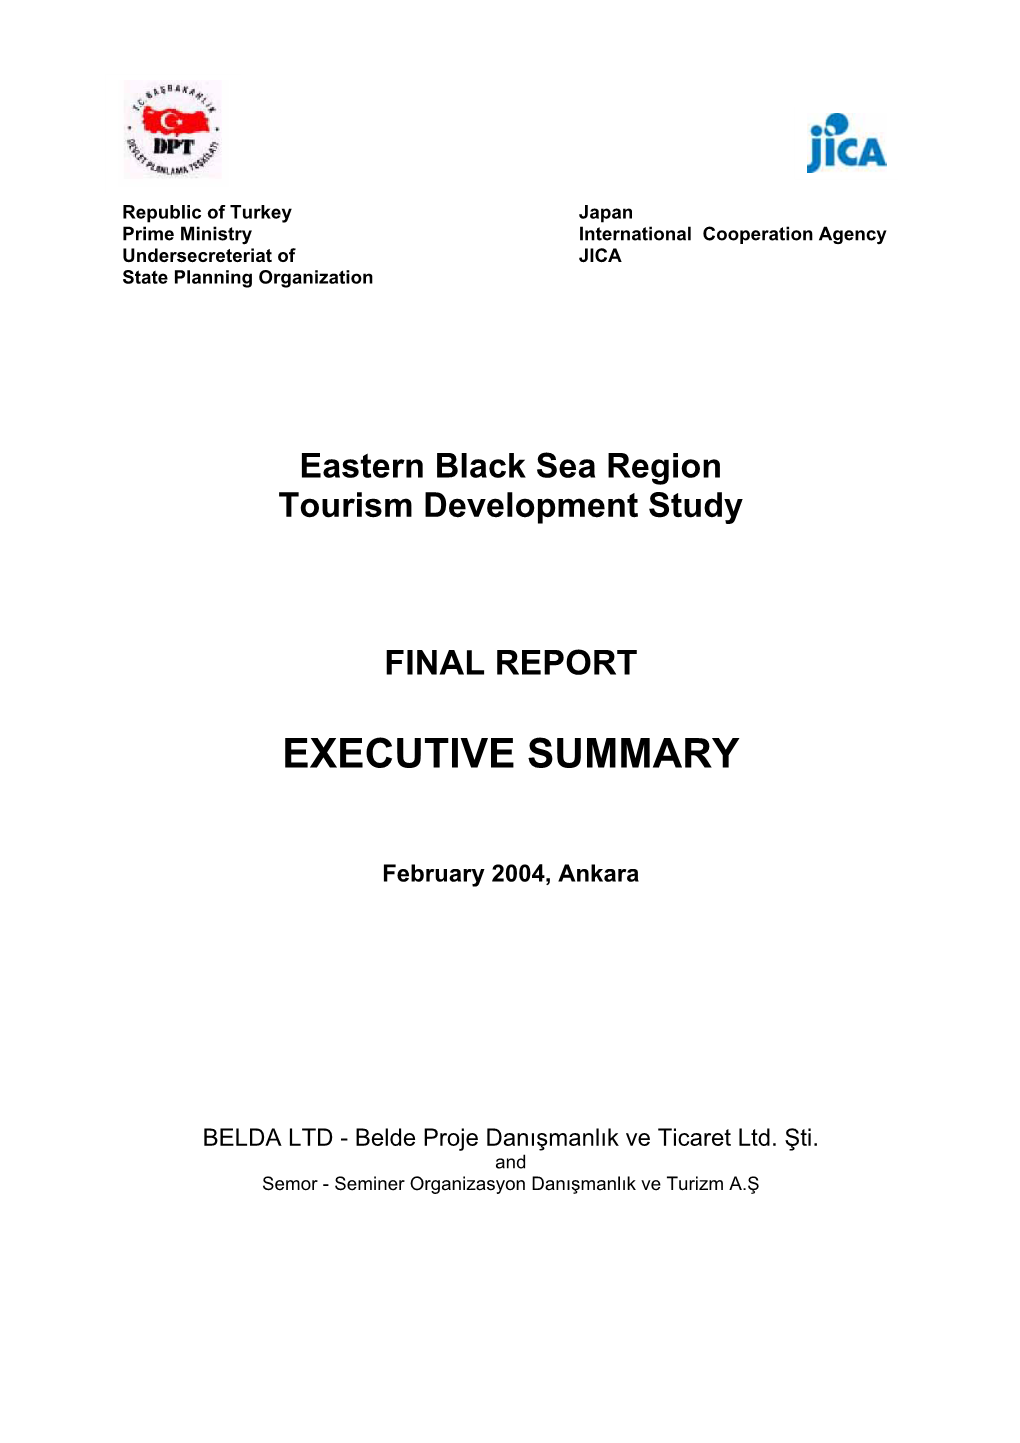 Doğu Karadeniz Bölgesinde Turizm Sektörünün Geliştirilmesine Yönelik